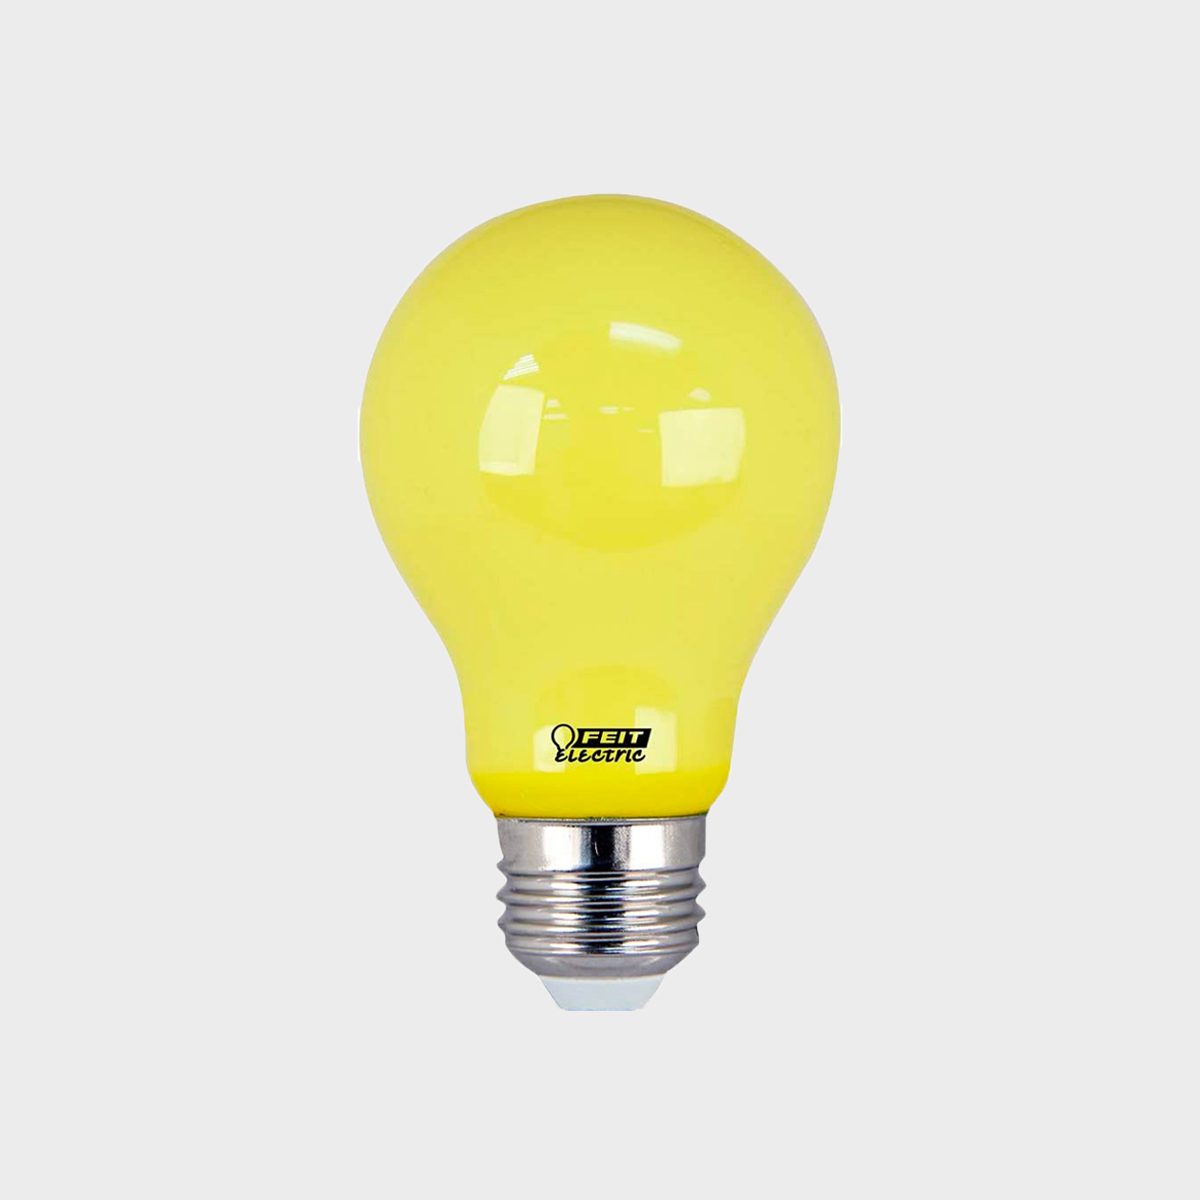 Feit Electric Bug Led Light Bulb Ecomm Amazon.com